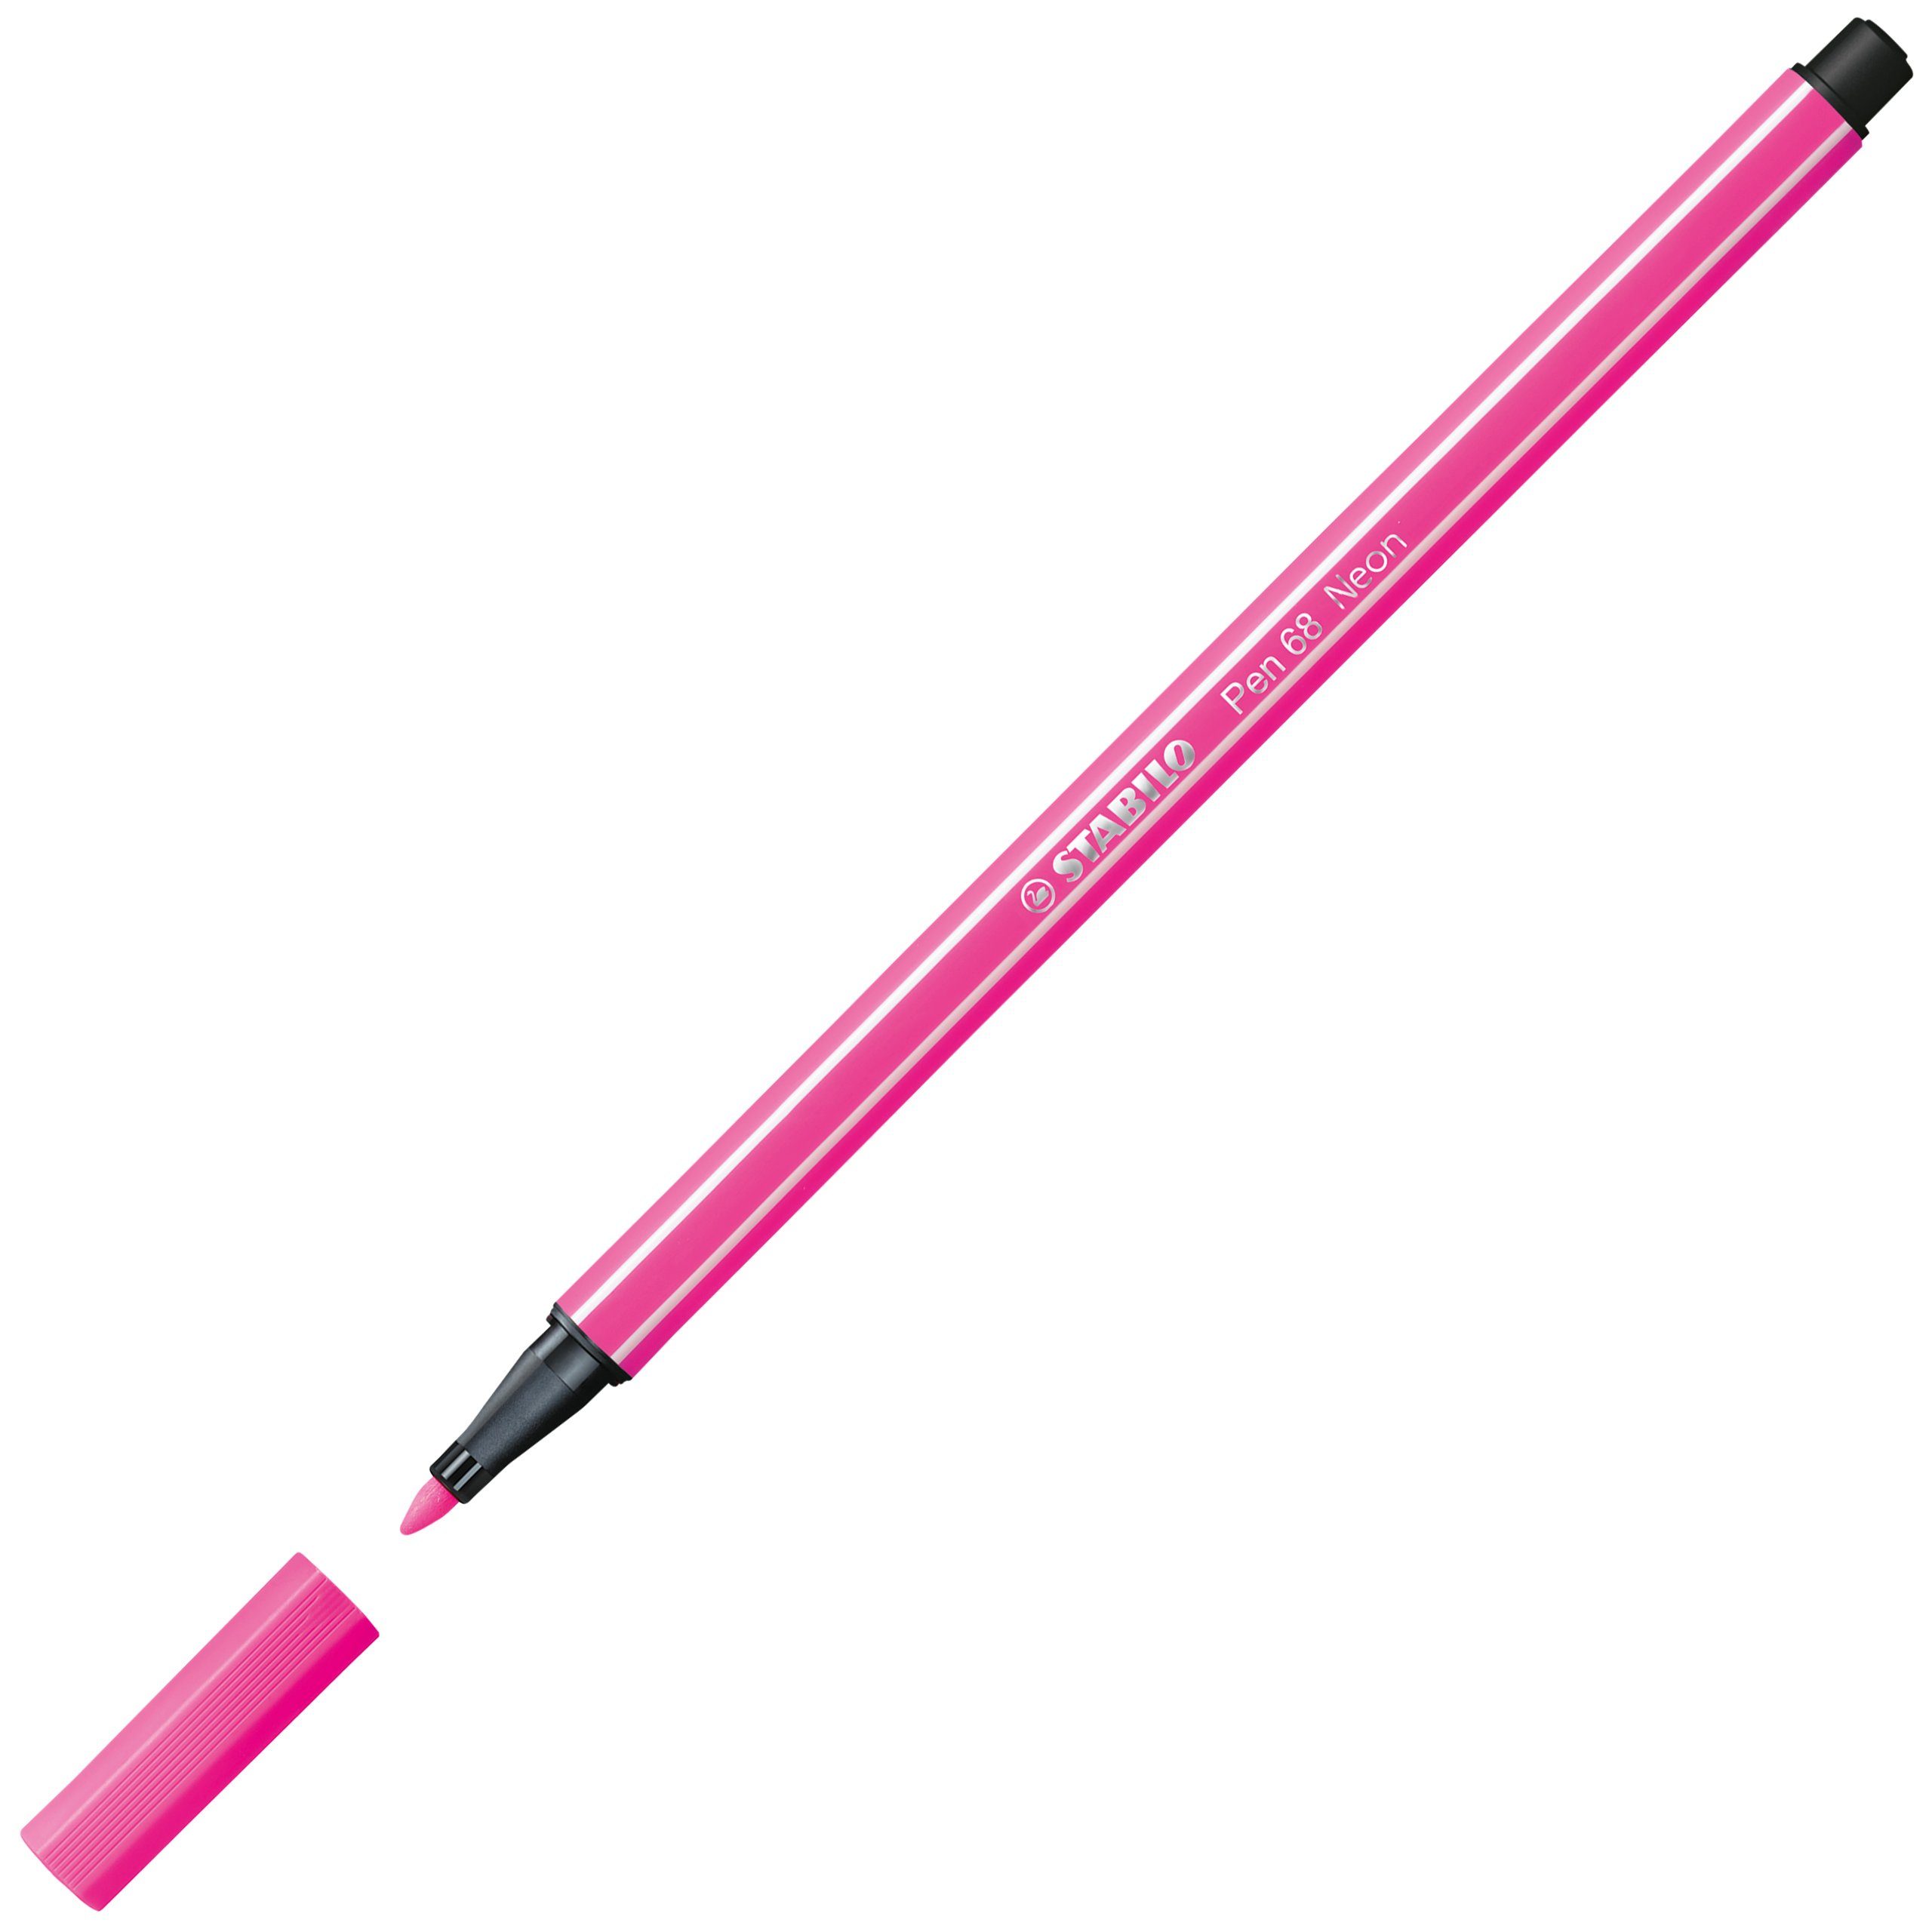 STABILO Faserstift STABILO 6 Fasermaler 68 Etui Farben Pen